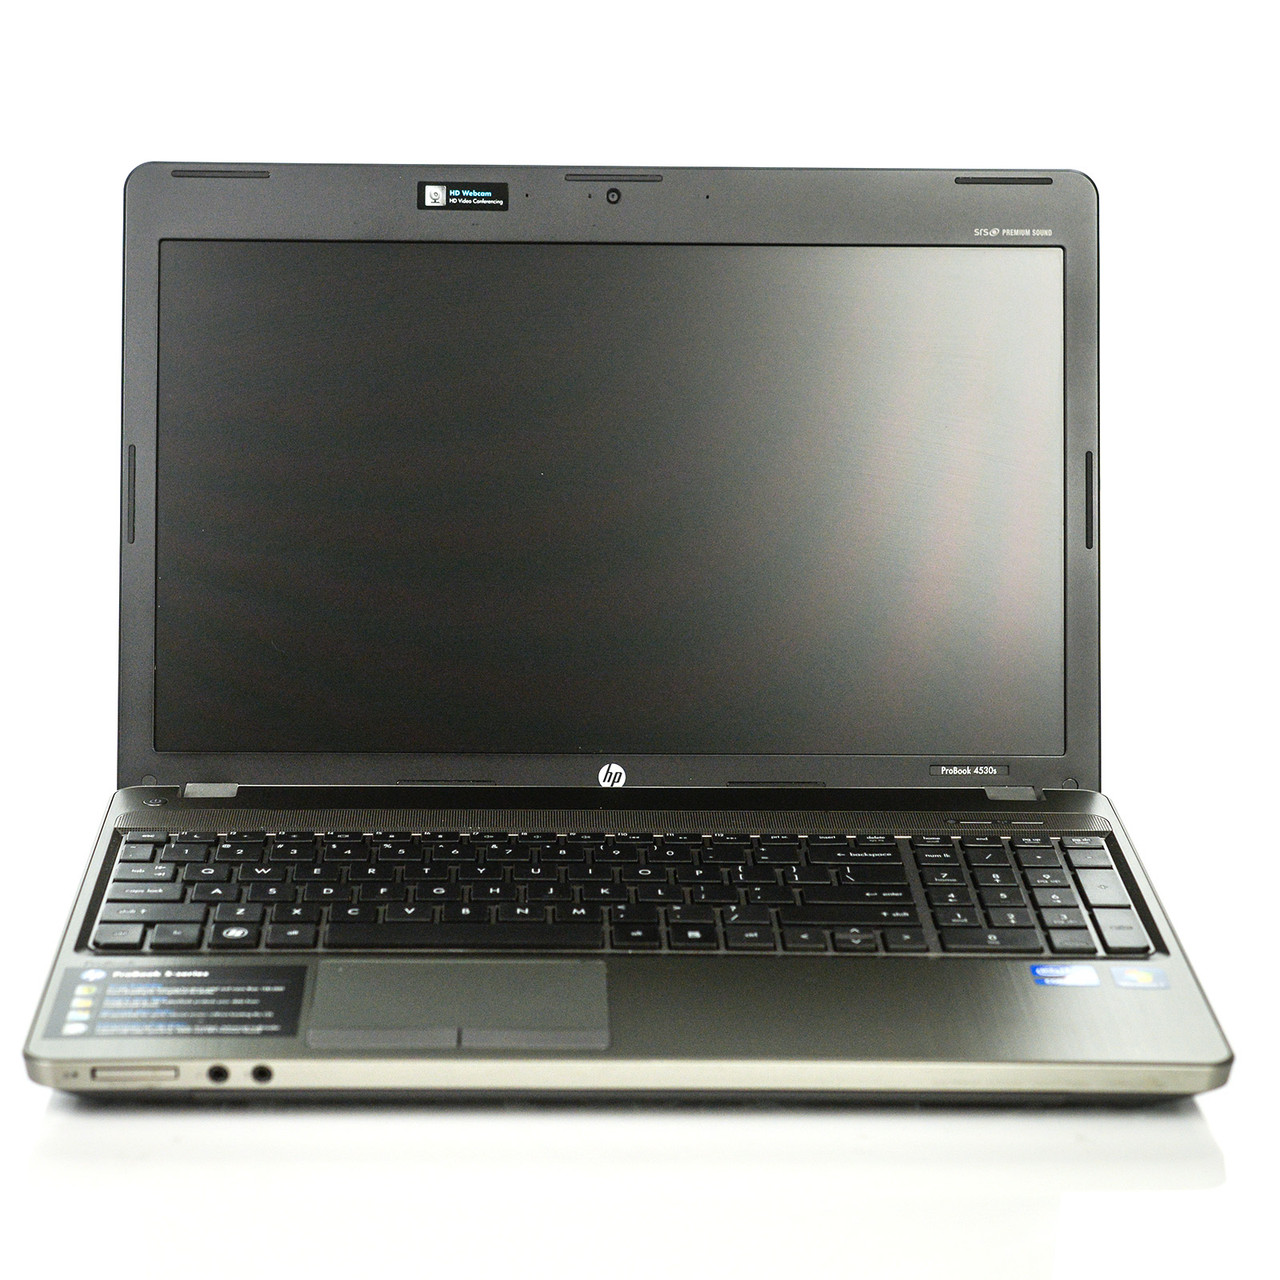 HP Probook 4530s specifications